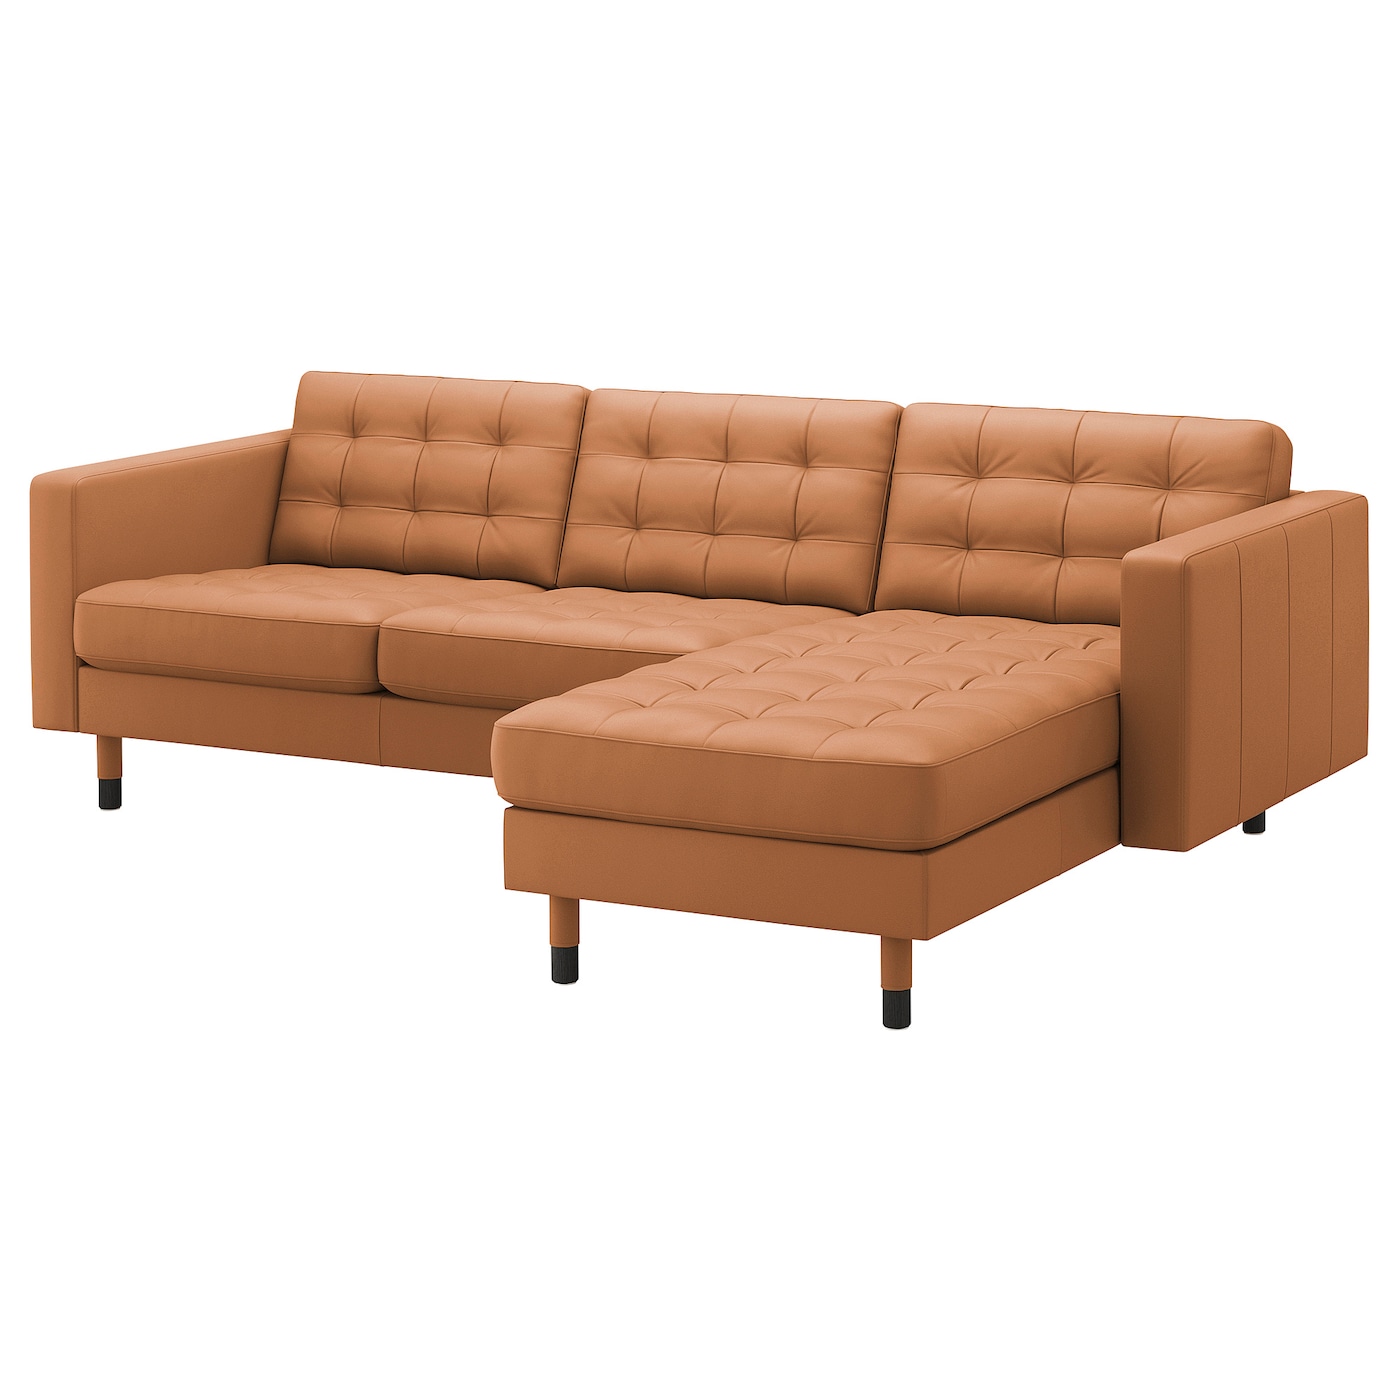 3-местный диван с шезлонгом - IKEA LANDSKRONA, 89x240см, оранжевый, кожа, ЛАНДСКРУНА ИКЕА